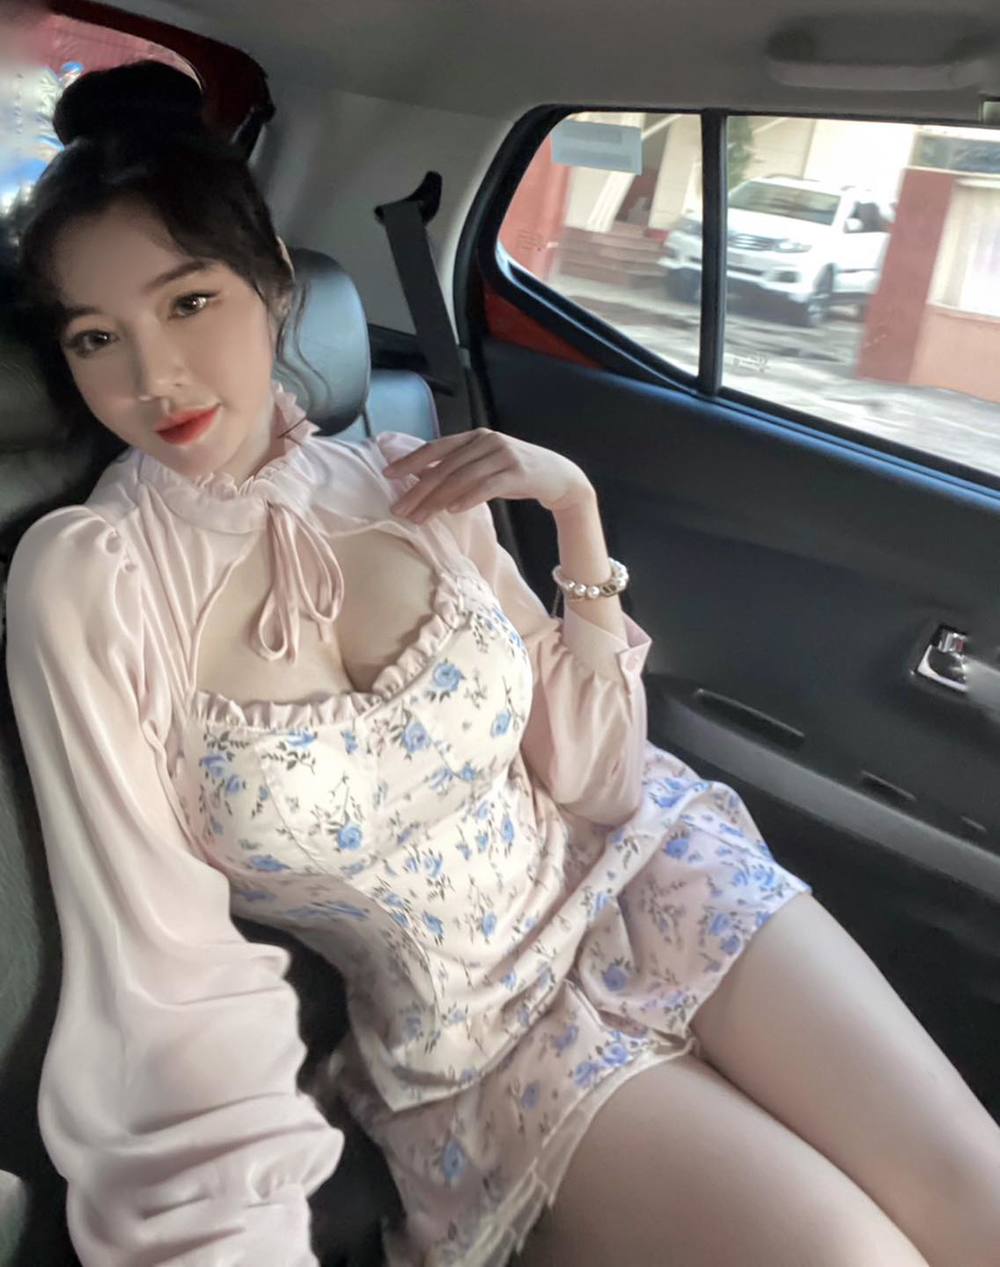  
Elly Trần lại khoe ảnh trên xe, cô nàng diện váy hoa khoét ngực trang điểm nhẹ nhàng cũng khiến người xem hút mắt. (Ảnh: FBNV)